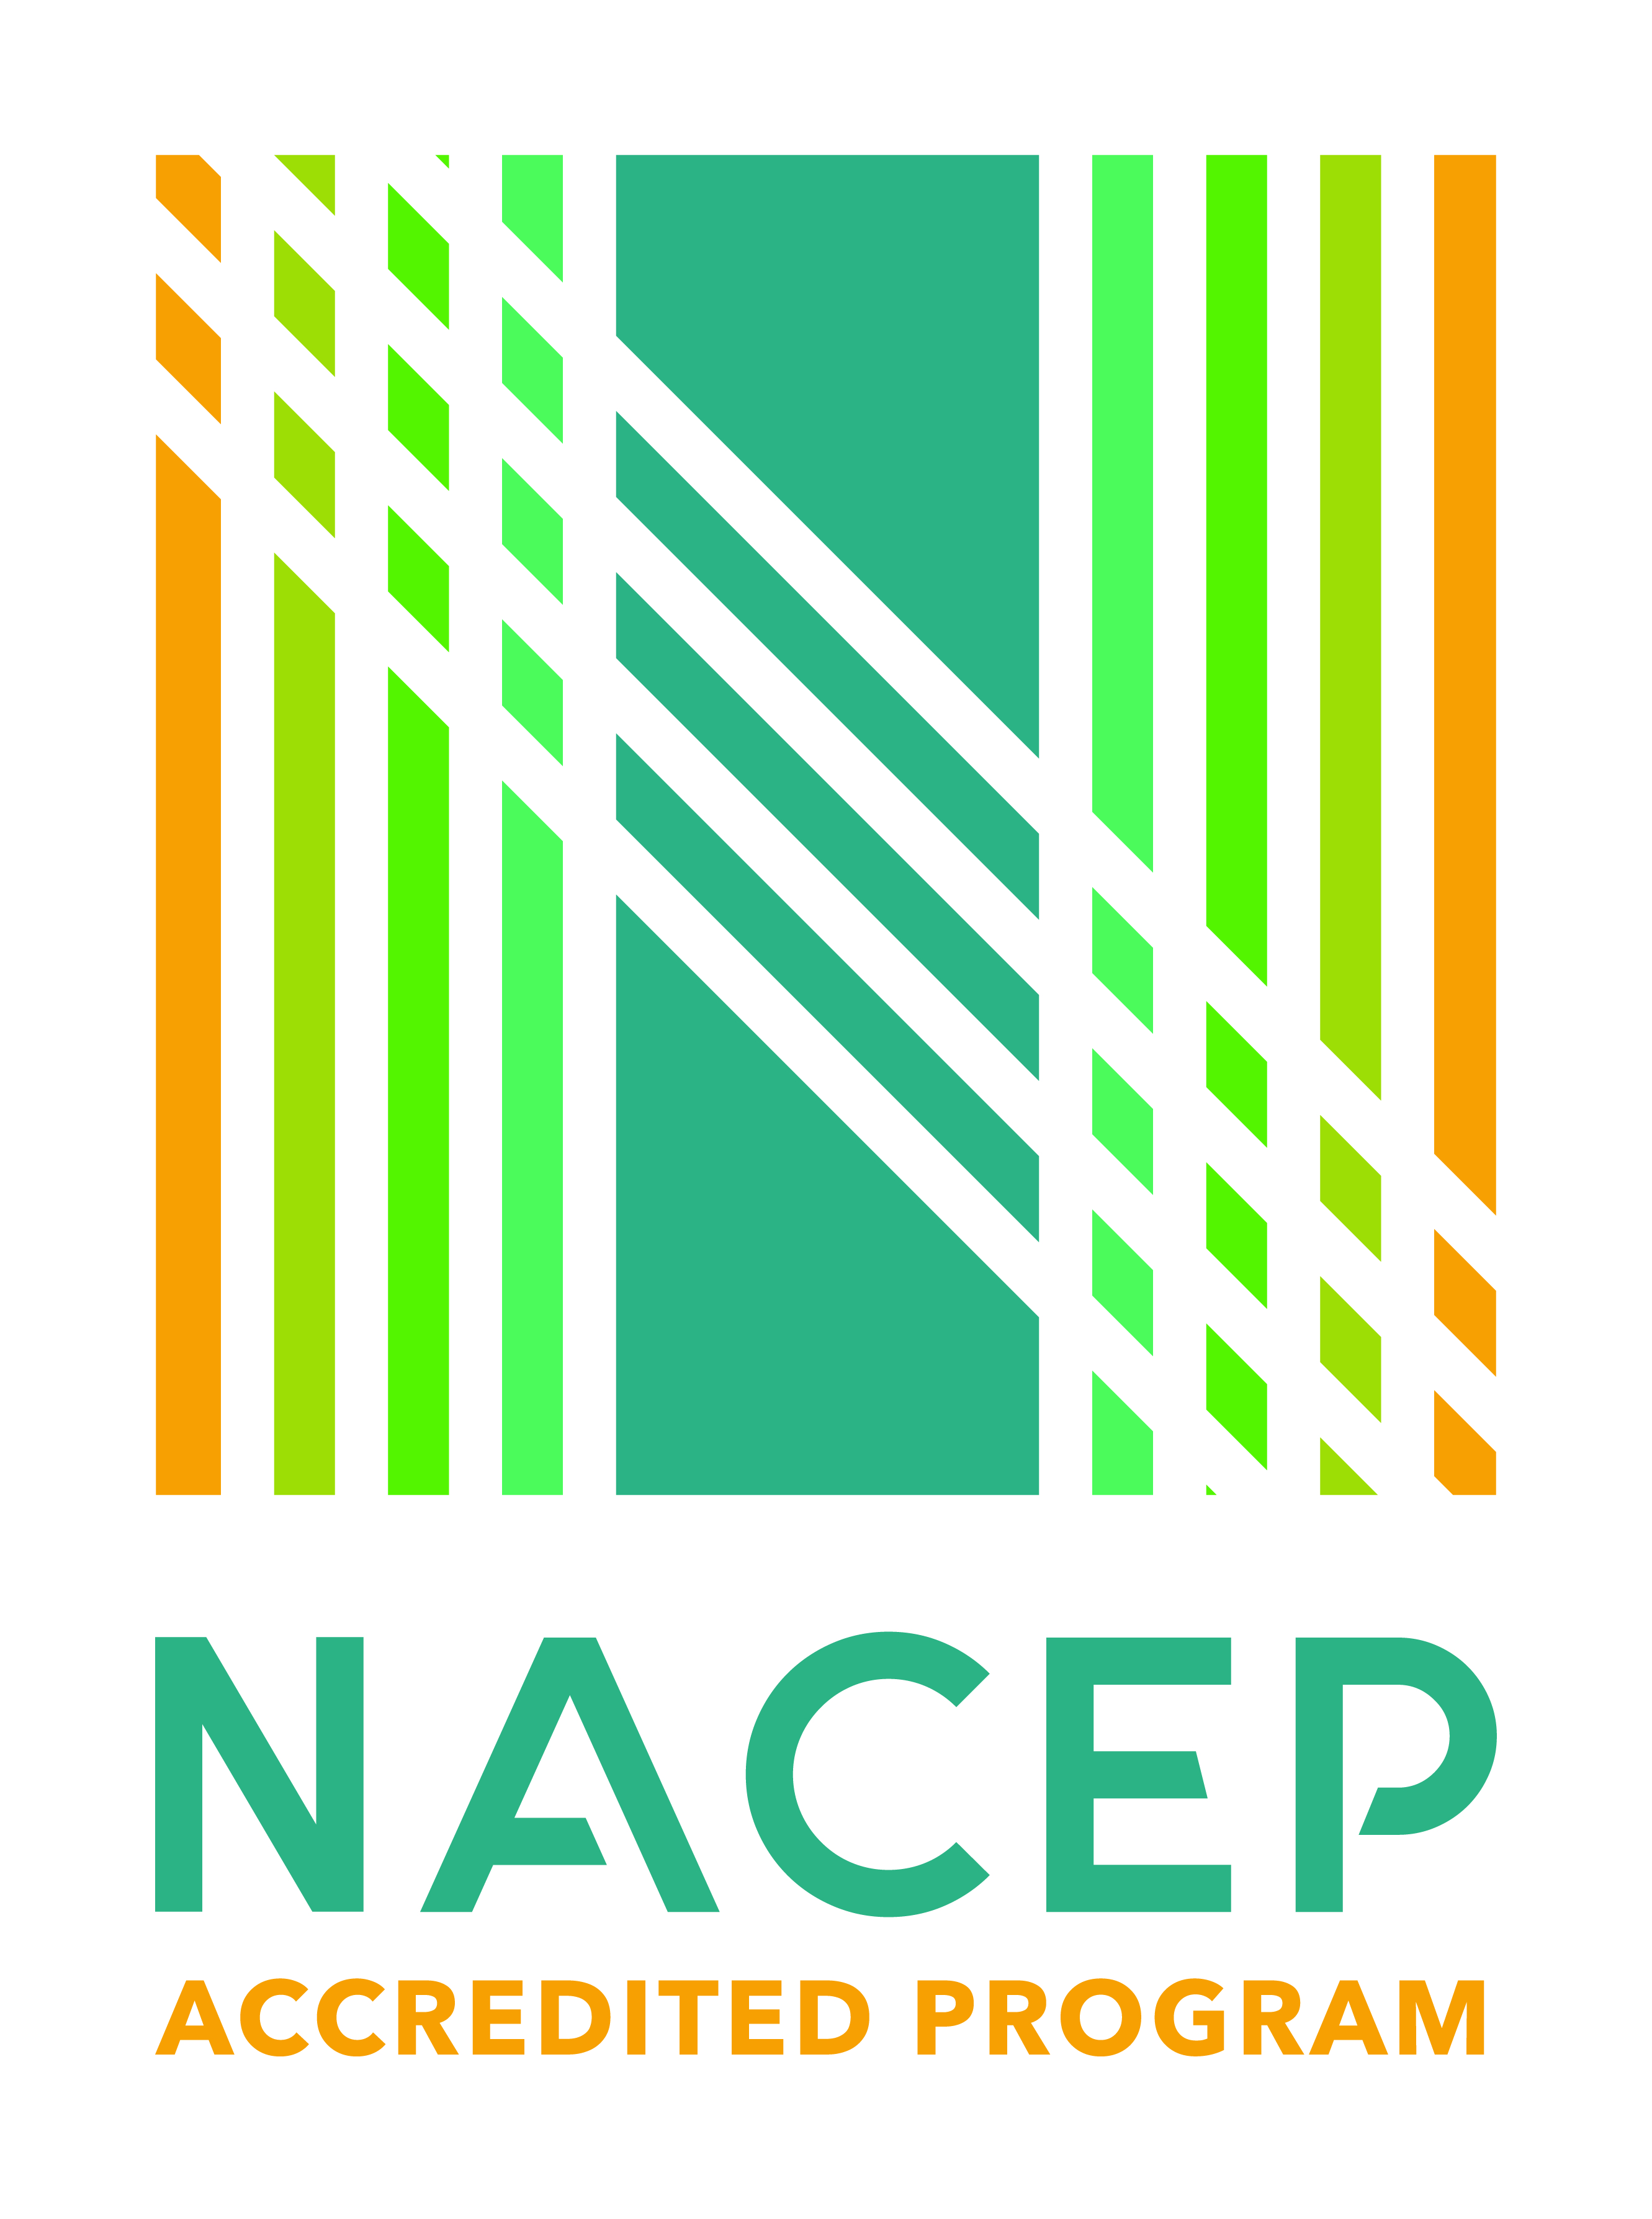 NACEP Accredited Program logo